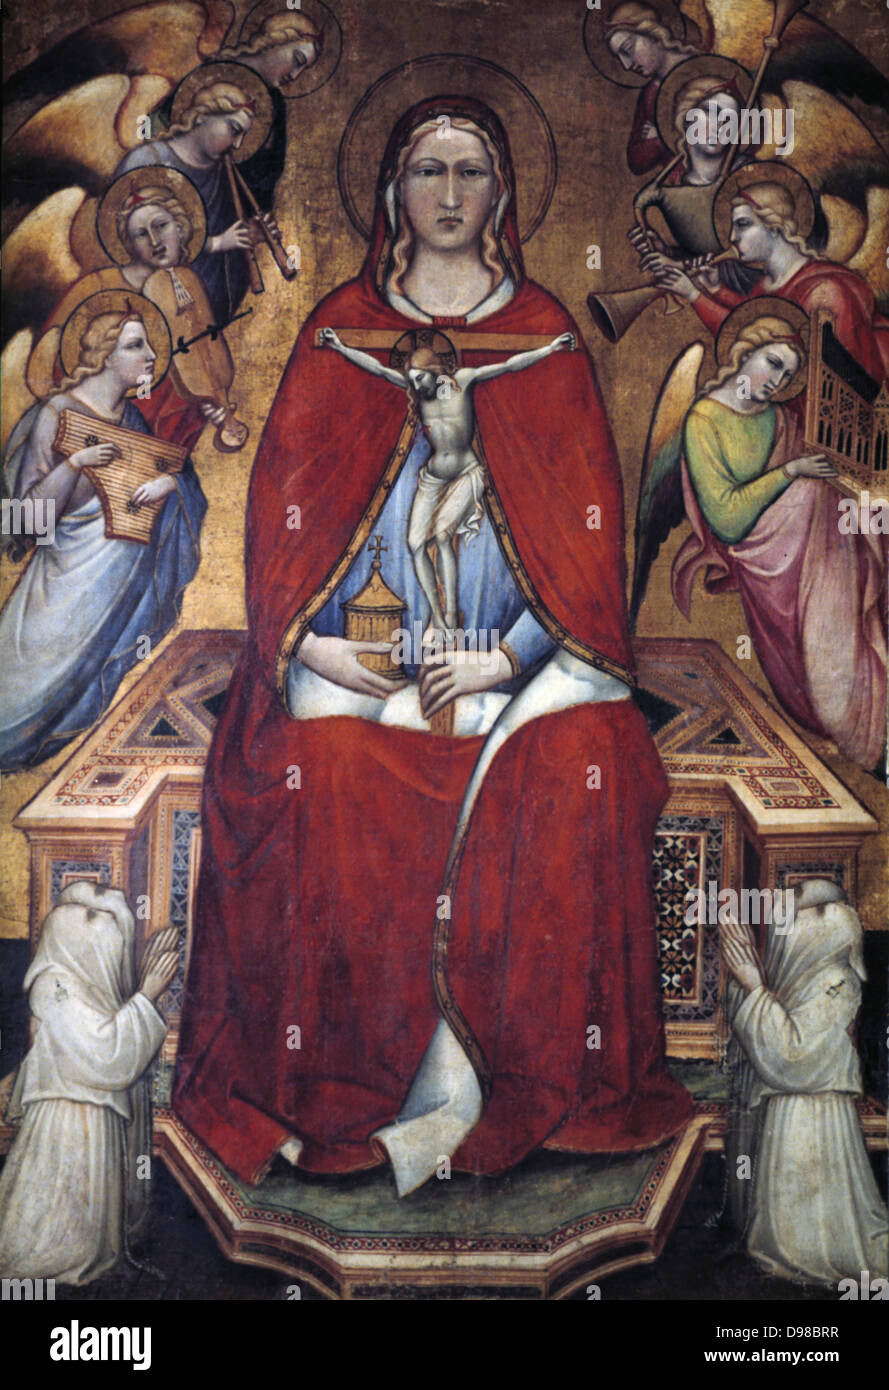 Sainte Marie Madeleine avec un Crucifix', 1375. Marie, dans un manteau écarlate, est titulaire d'un cricifix avec l'image du Christ crucifié. Autour d'elle sont des anges jouant des instruments de musique. Spinello Aretino (c1350-1410), peintre italien. Banque D'Images